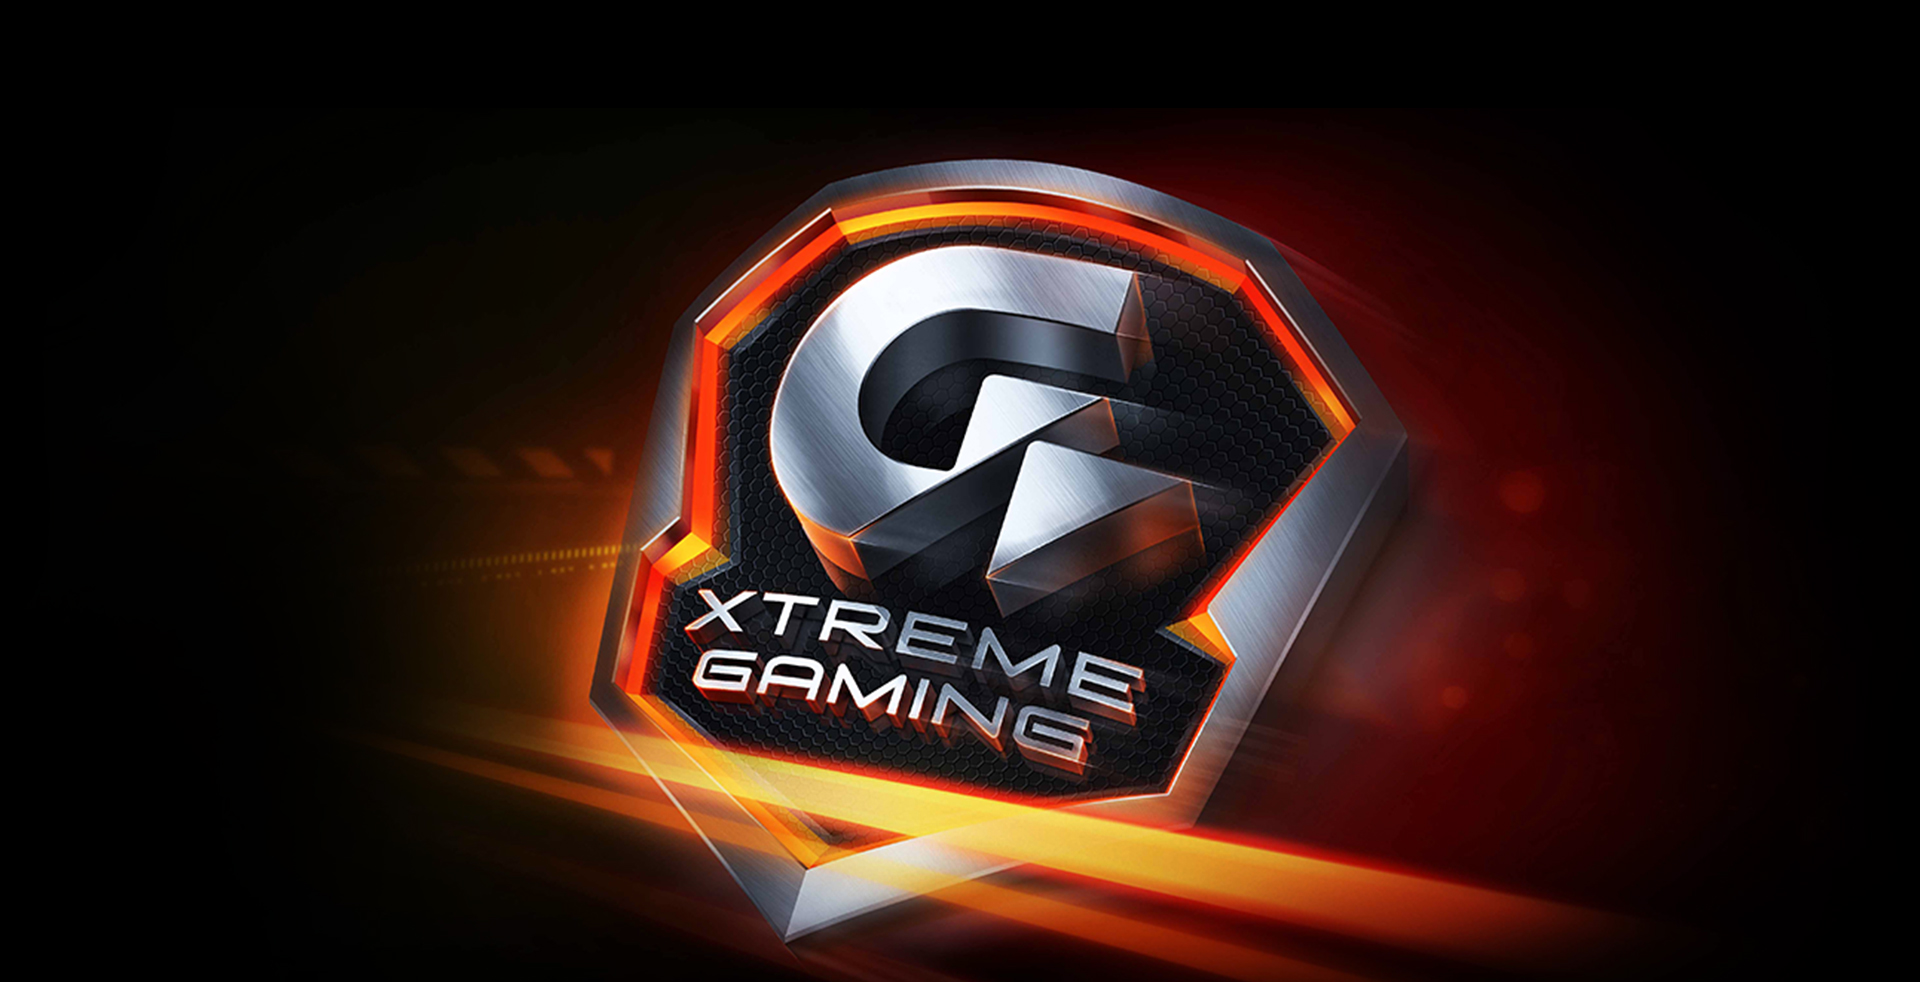 Immagine pubblicata in relazione al seguente contenuto: GIGABYTE lancia la card factory-overclocked GeForce GTX 960 Xtreme Gaming | Nome immagine: news24021_GIGABYTE-GeForce-GTX-960-Xtreme-Gaming_6.jpg